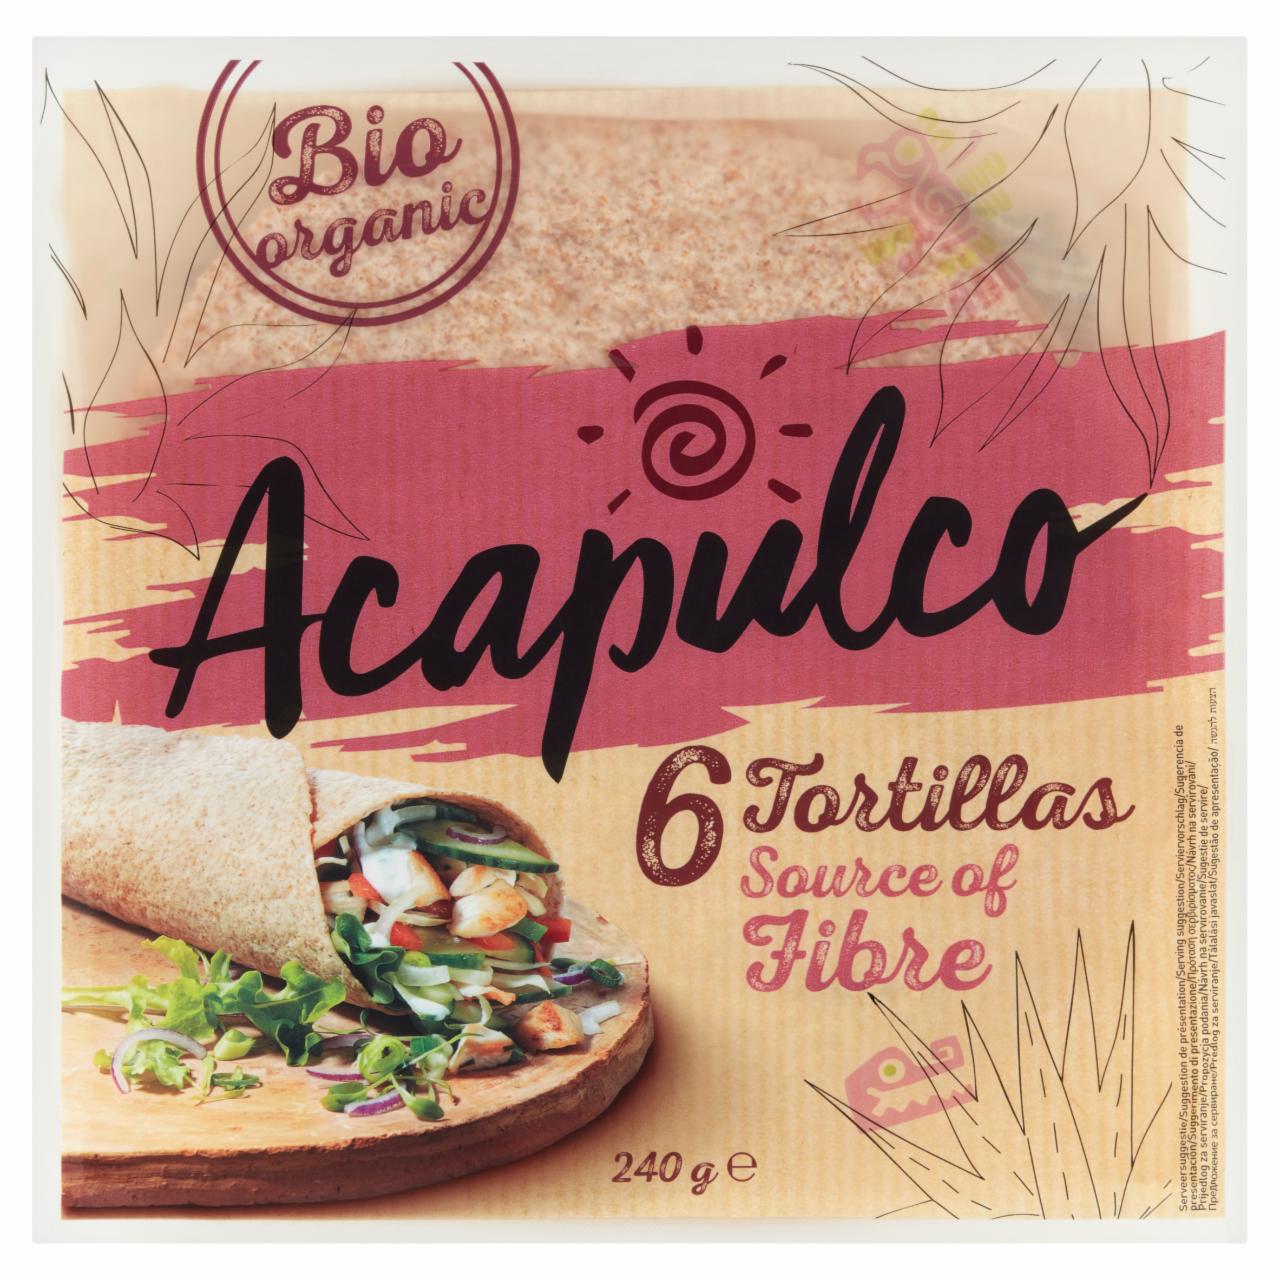 Képek - Acapulco búzalisztből készült tortillák búzakorpával 6 db 240 g